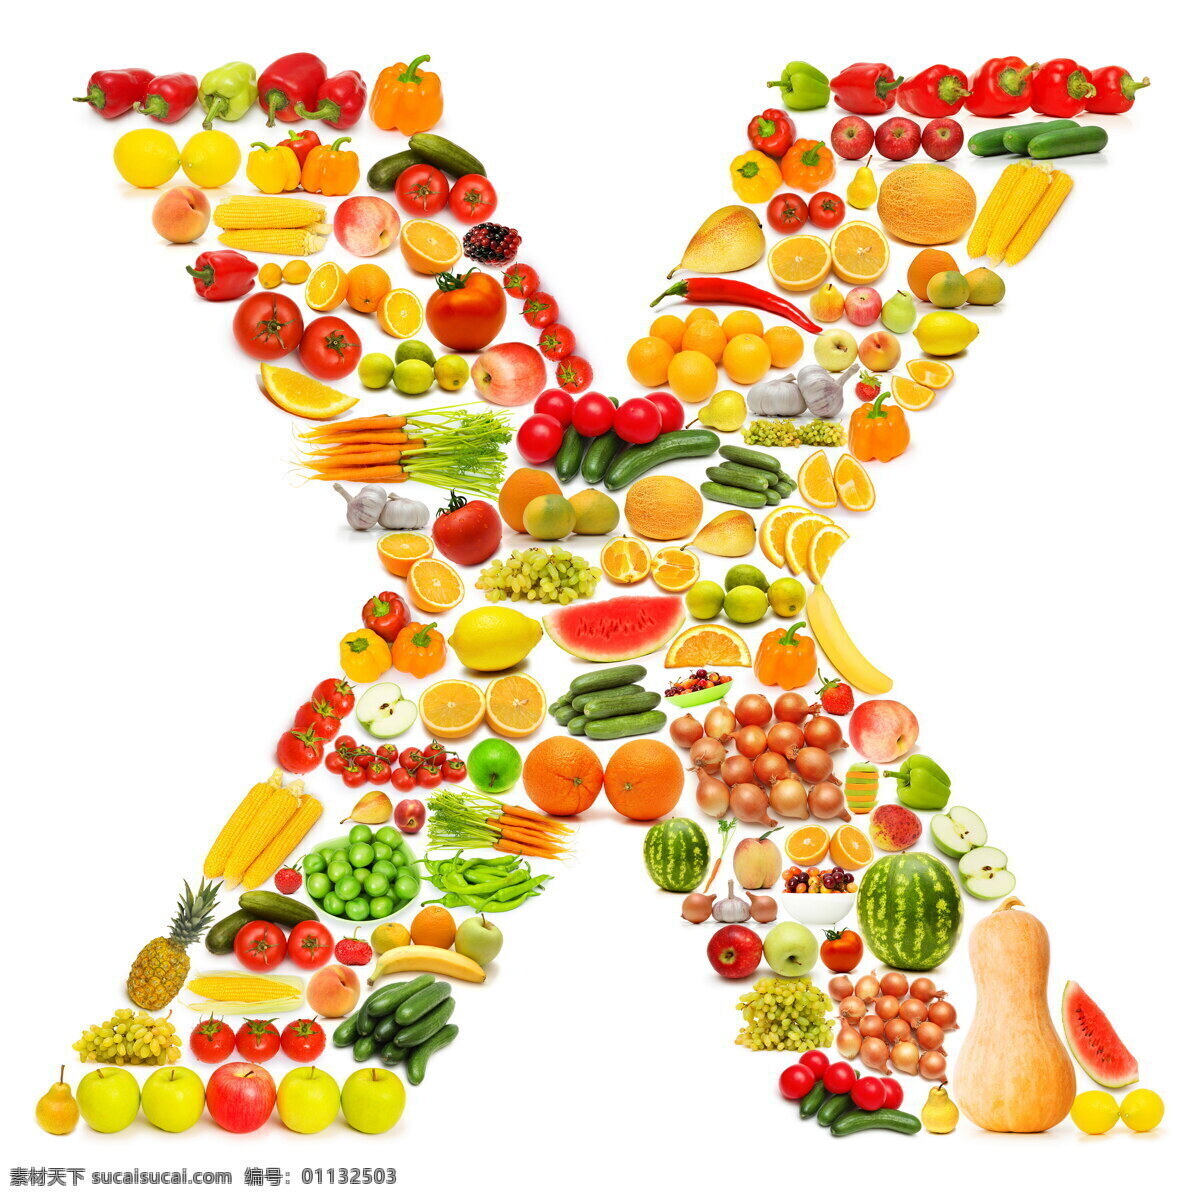 蔬菜水果 组成 字母 x 橙子 葡萄 西红柿 黄瓜 西蓝花 蔬菜 水果 食物 水果蔬菜 餐饮美食 书画文字 文化艺术 白色